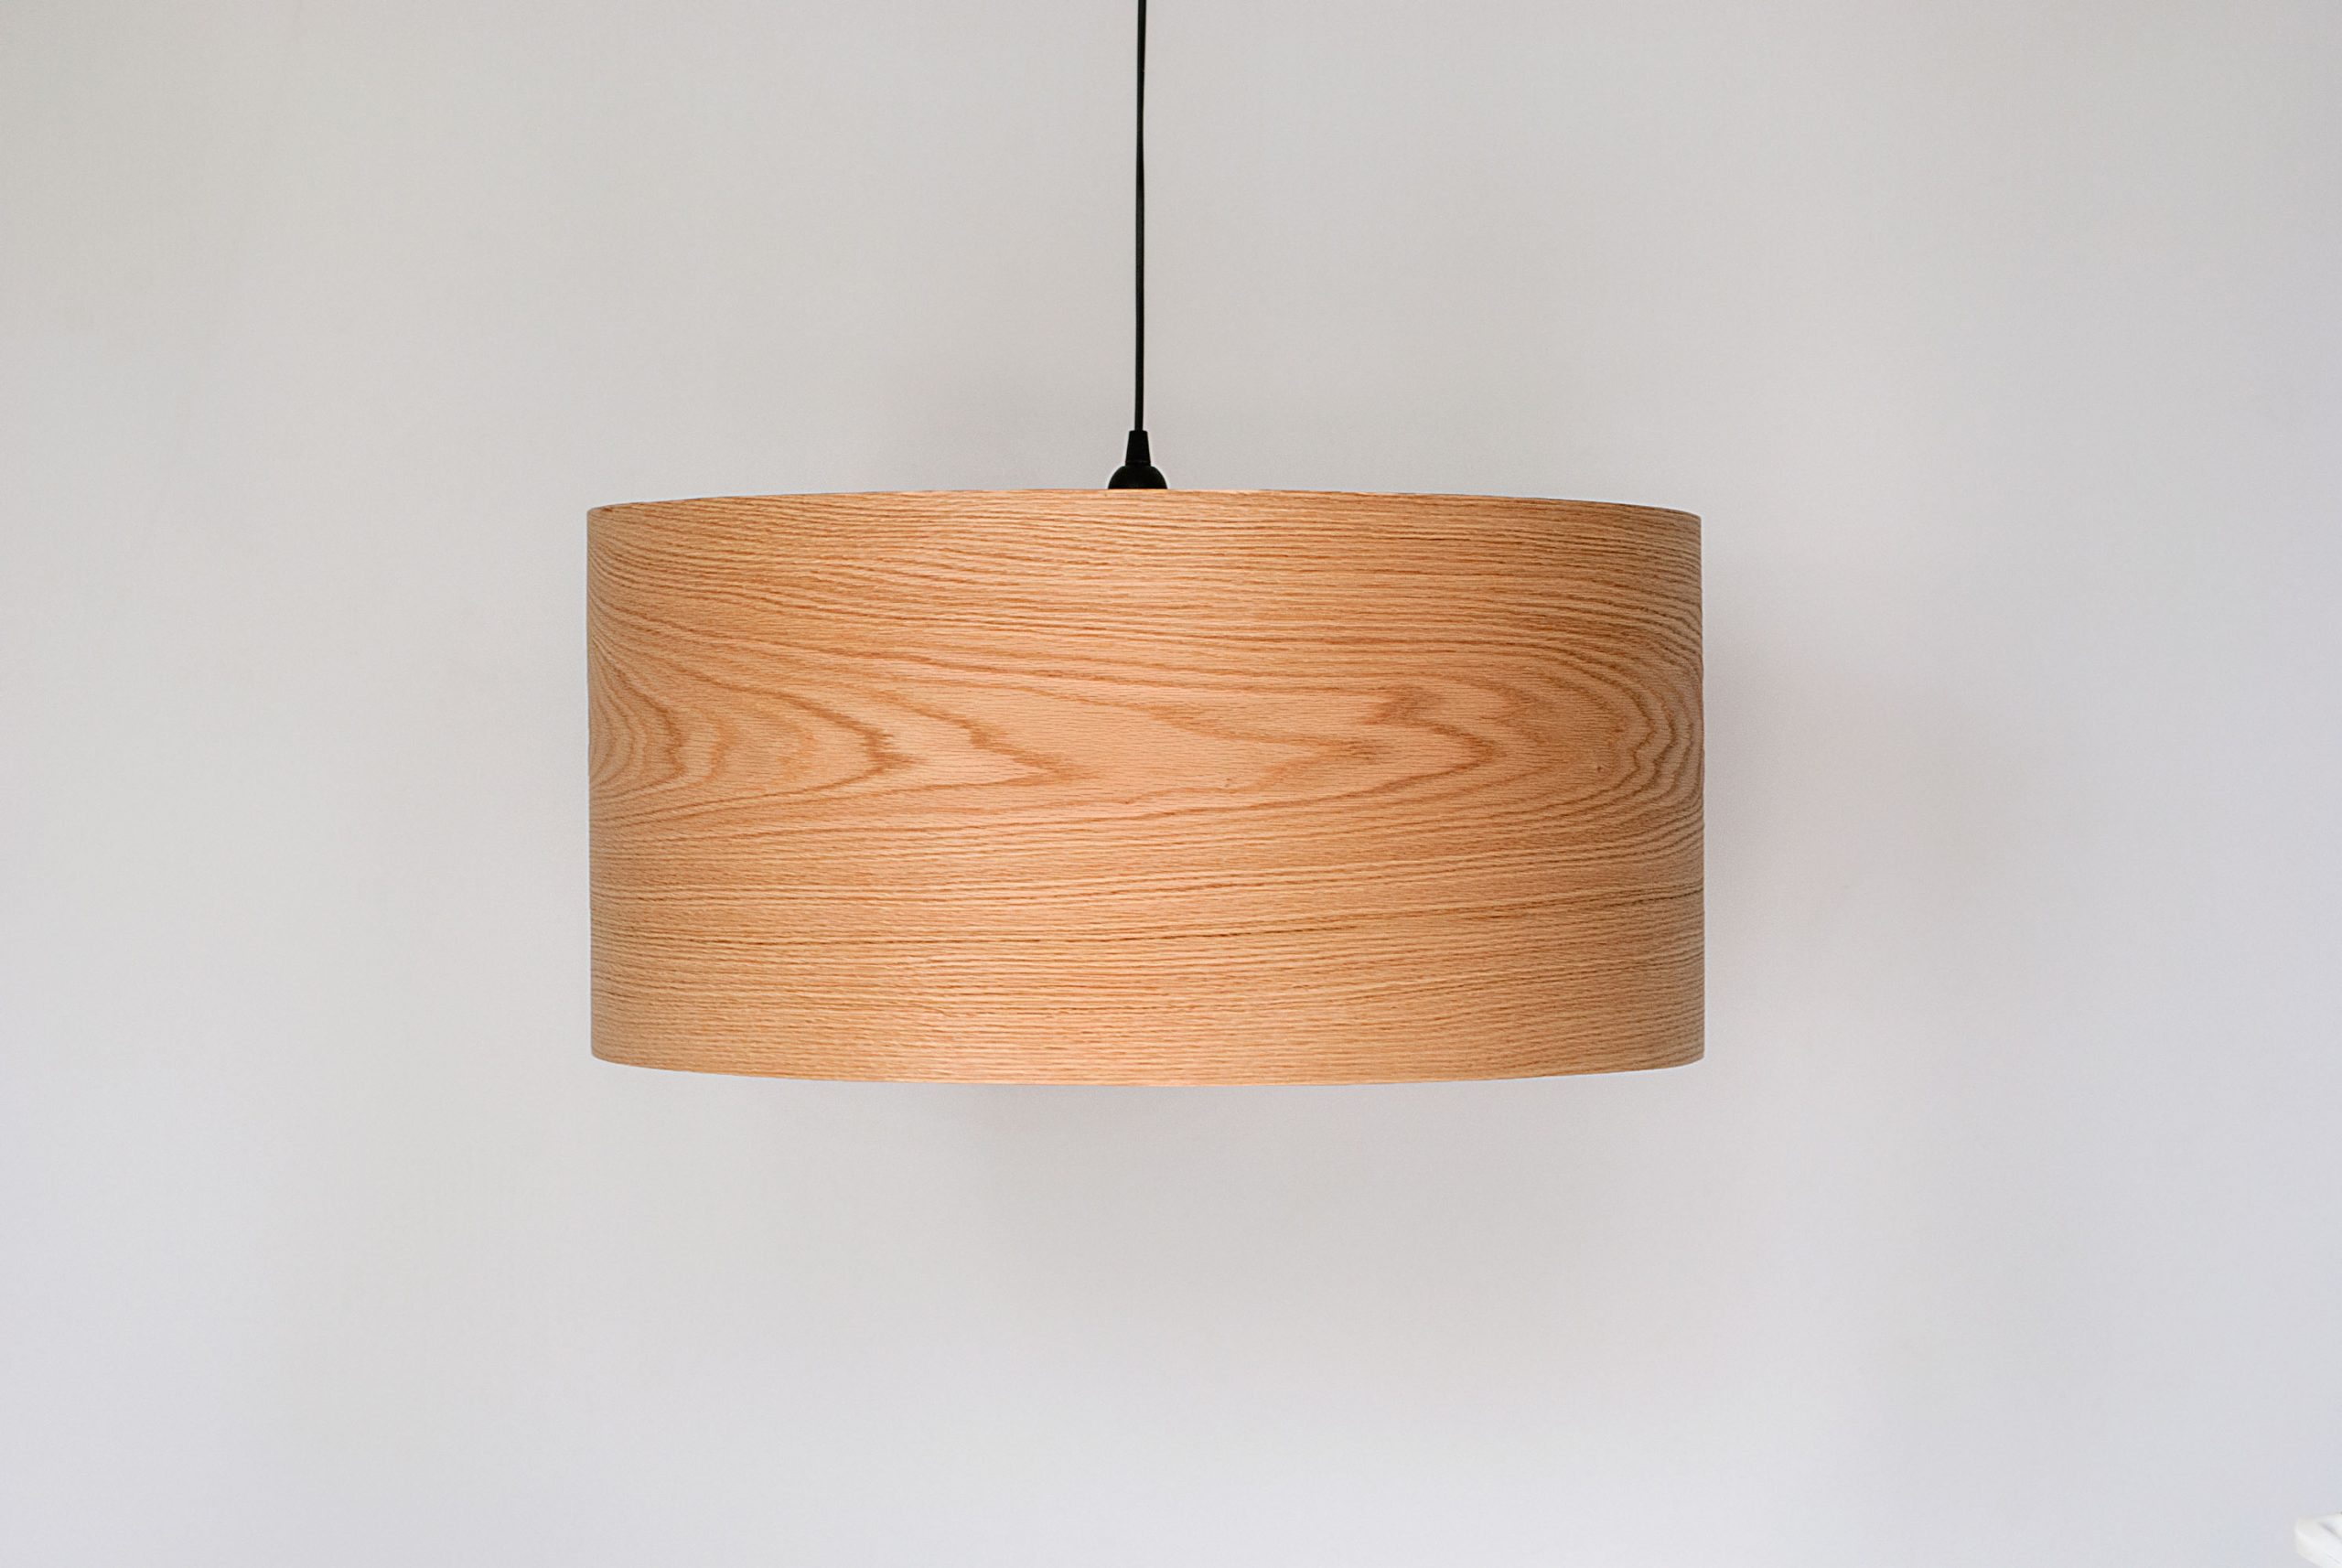 Handmade Wooden Ceiling Light